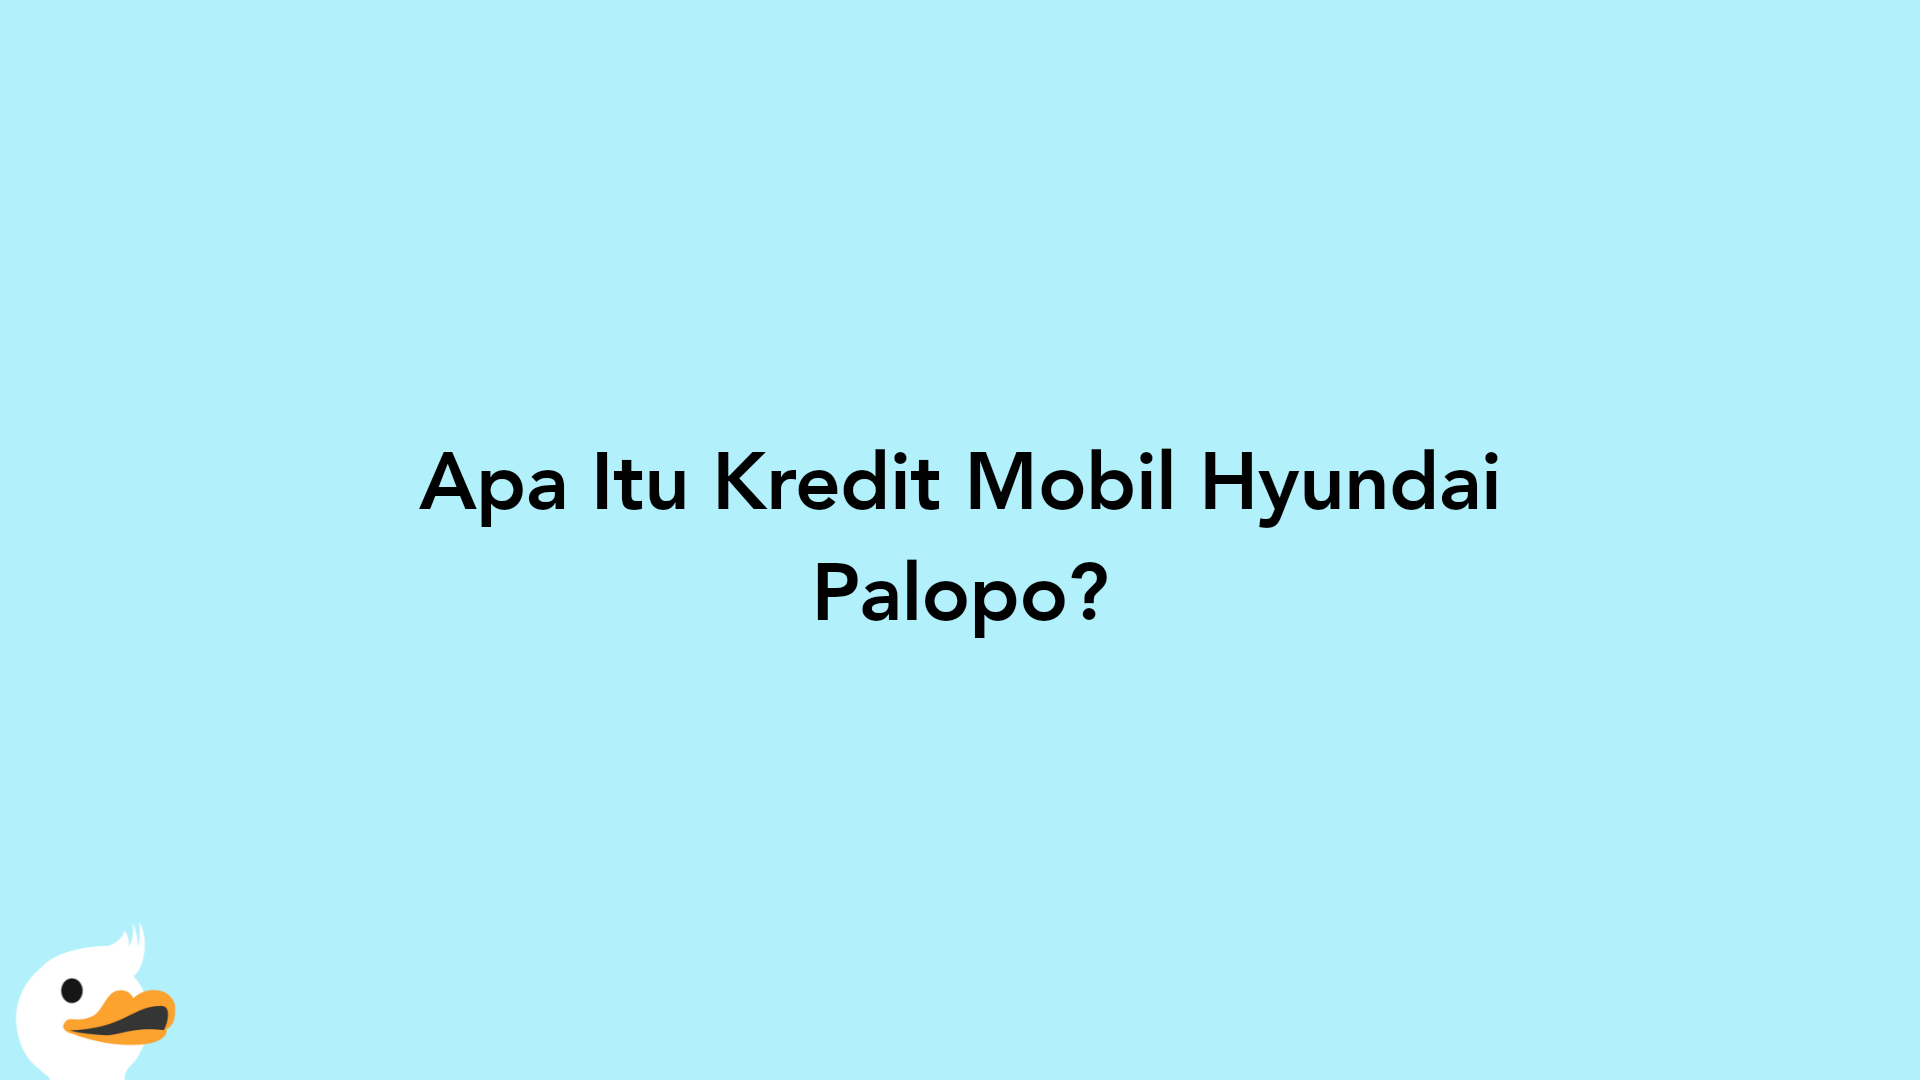 Apa Itu Kredit Mobil Hyundai Palopo?